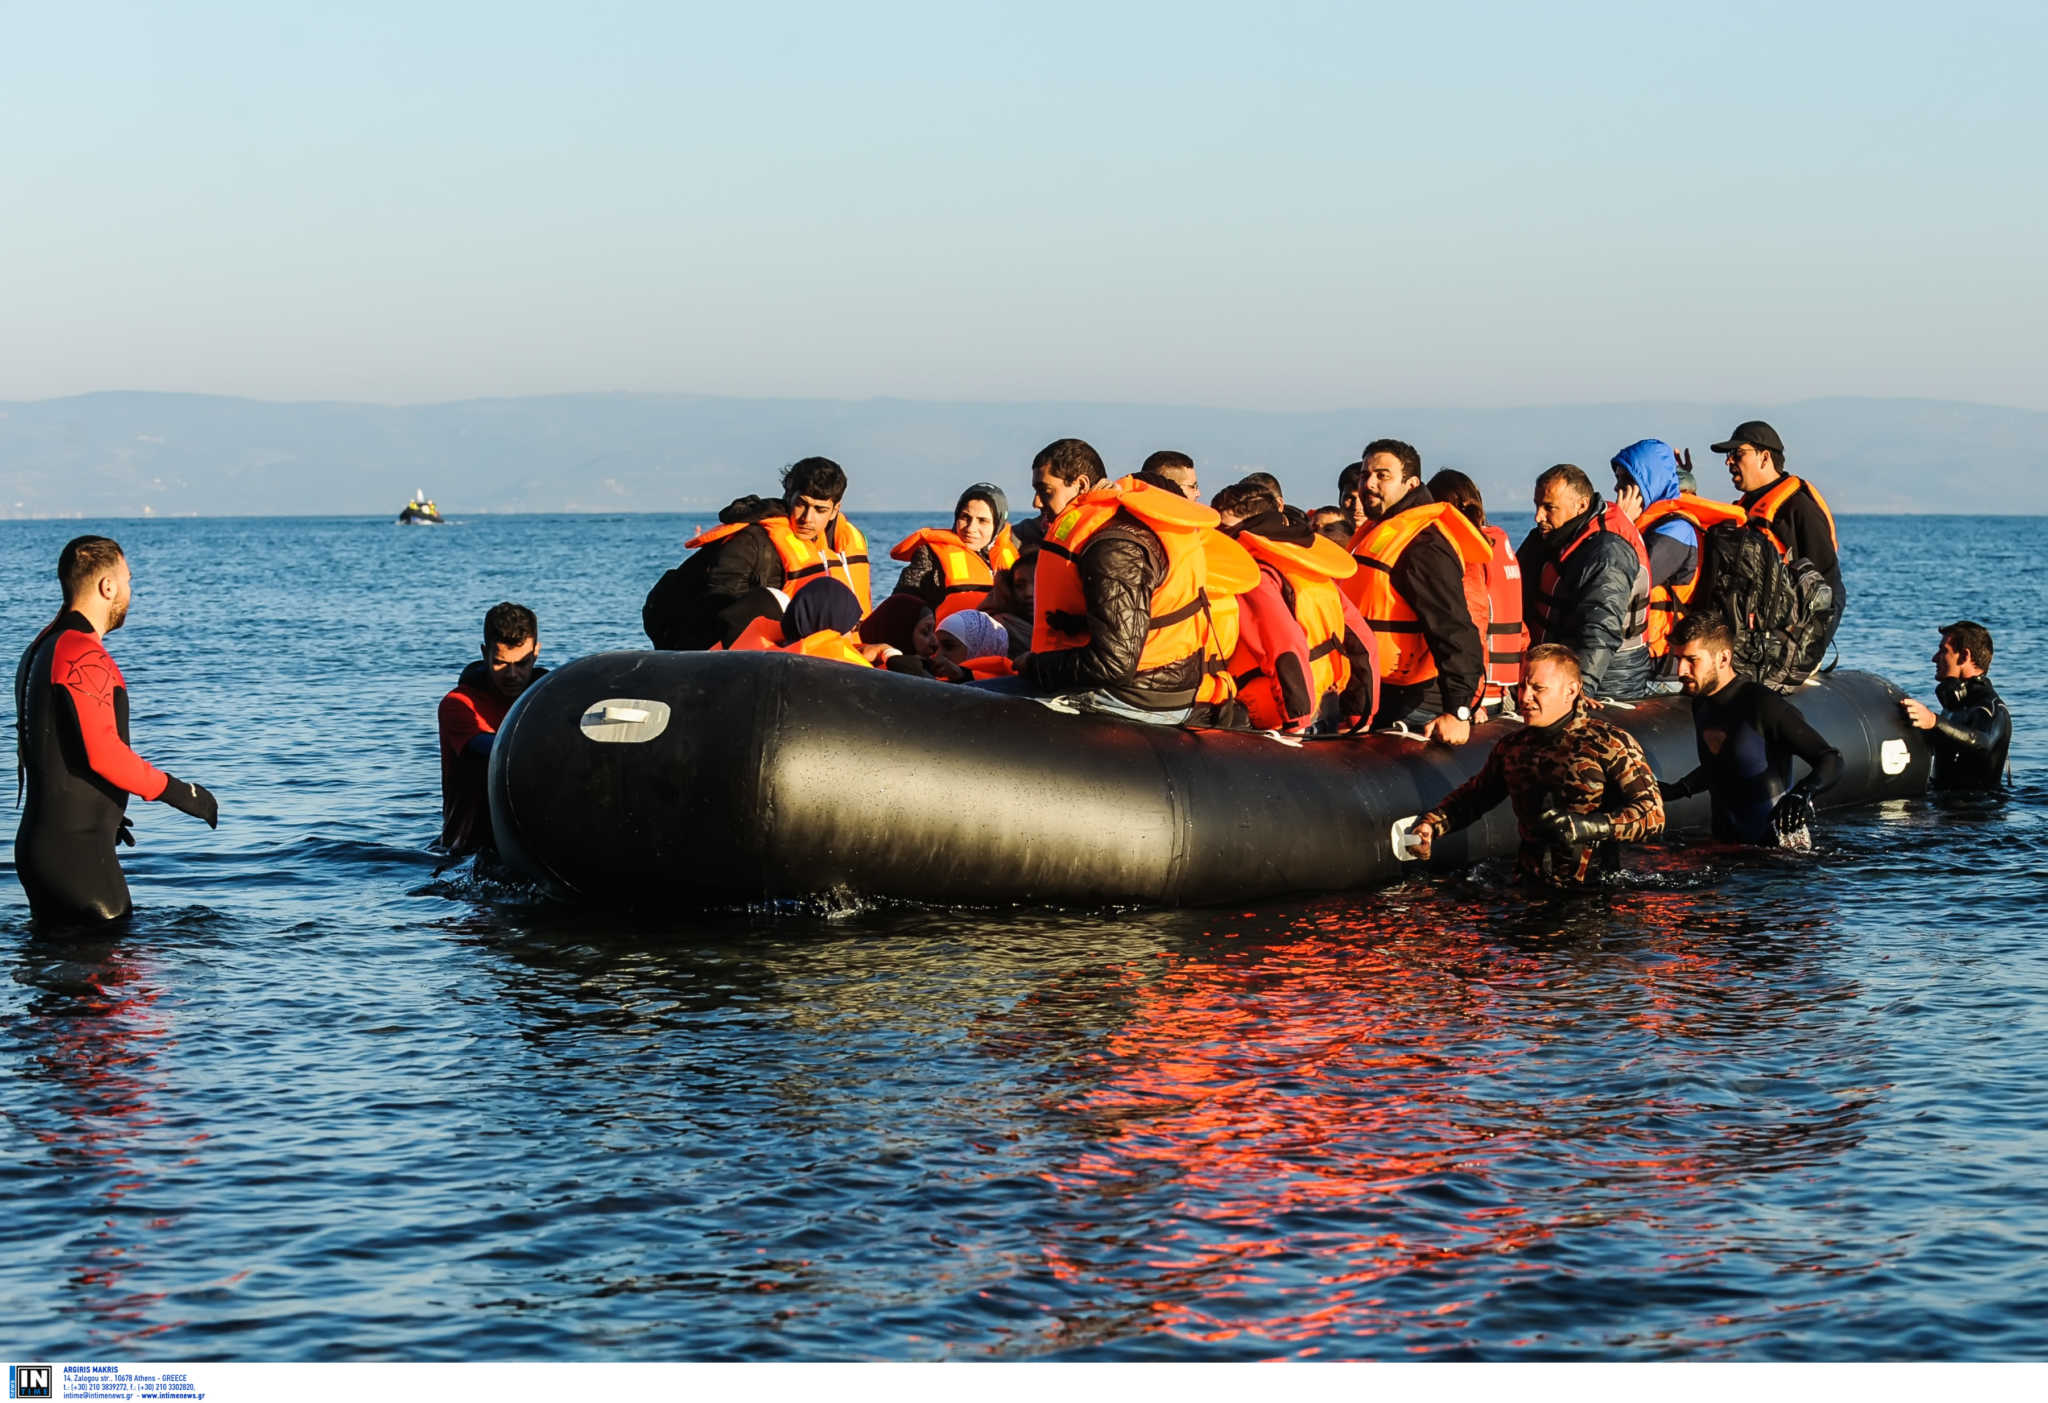 Βοήθεια στο μεταναστευτικό ζητούν από την ΕΕ Ελλάδα, Ιταλία, Ισπανία και Μάλτα